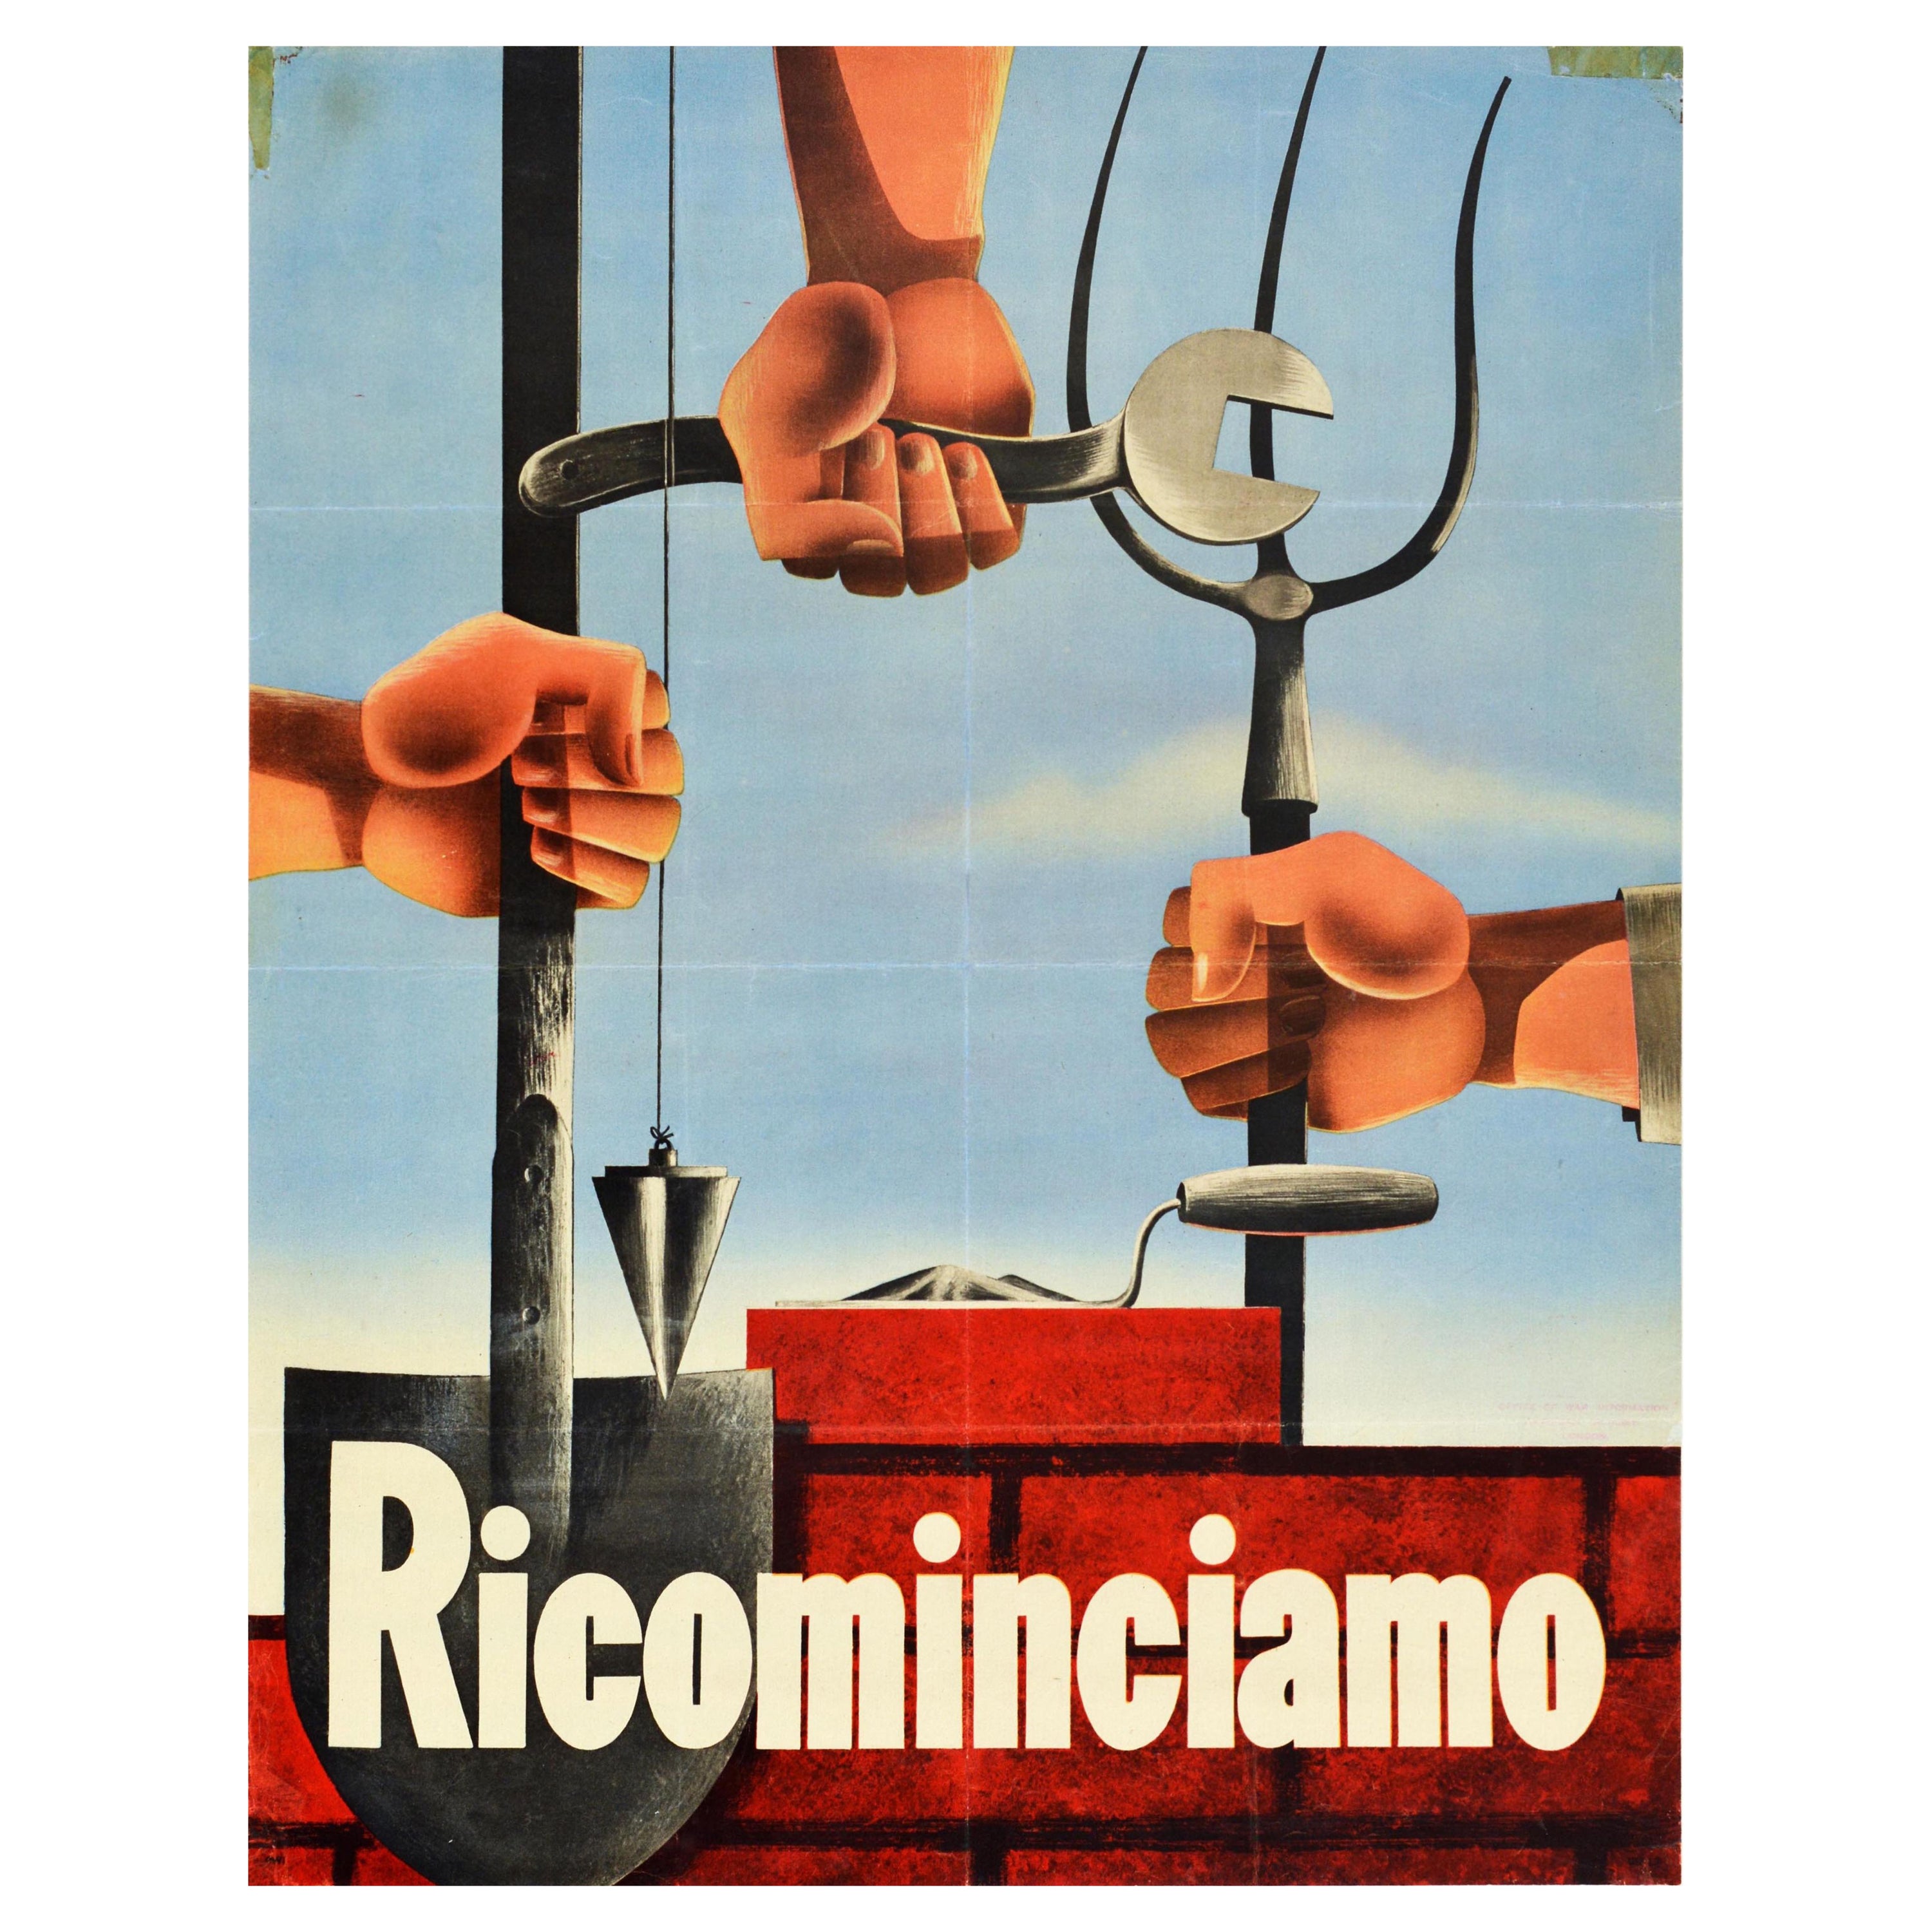 Affiche rétro originale de la Seconde Guerre mondiale, Ricominciamo reconstruit l'Italie, fermier agricole ouvrier